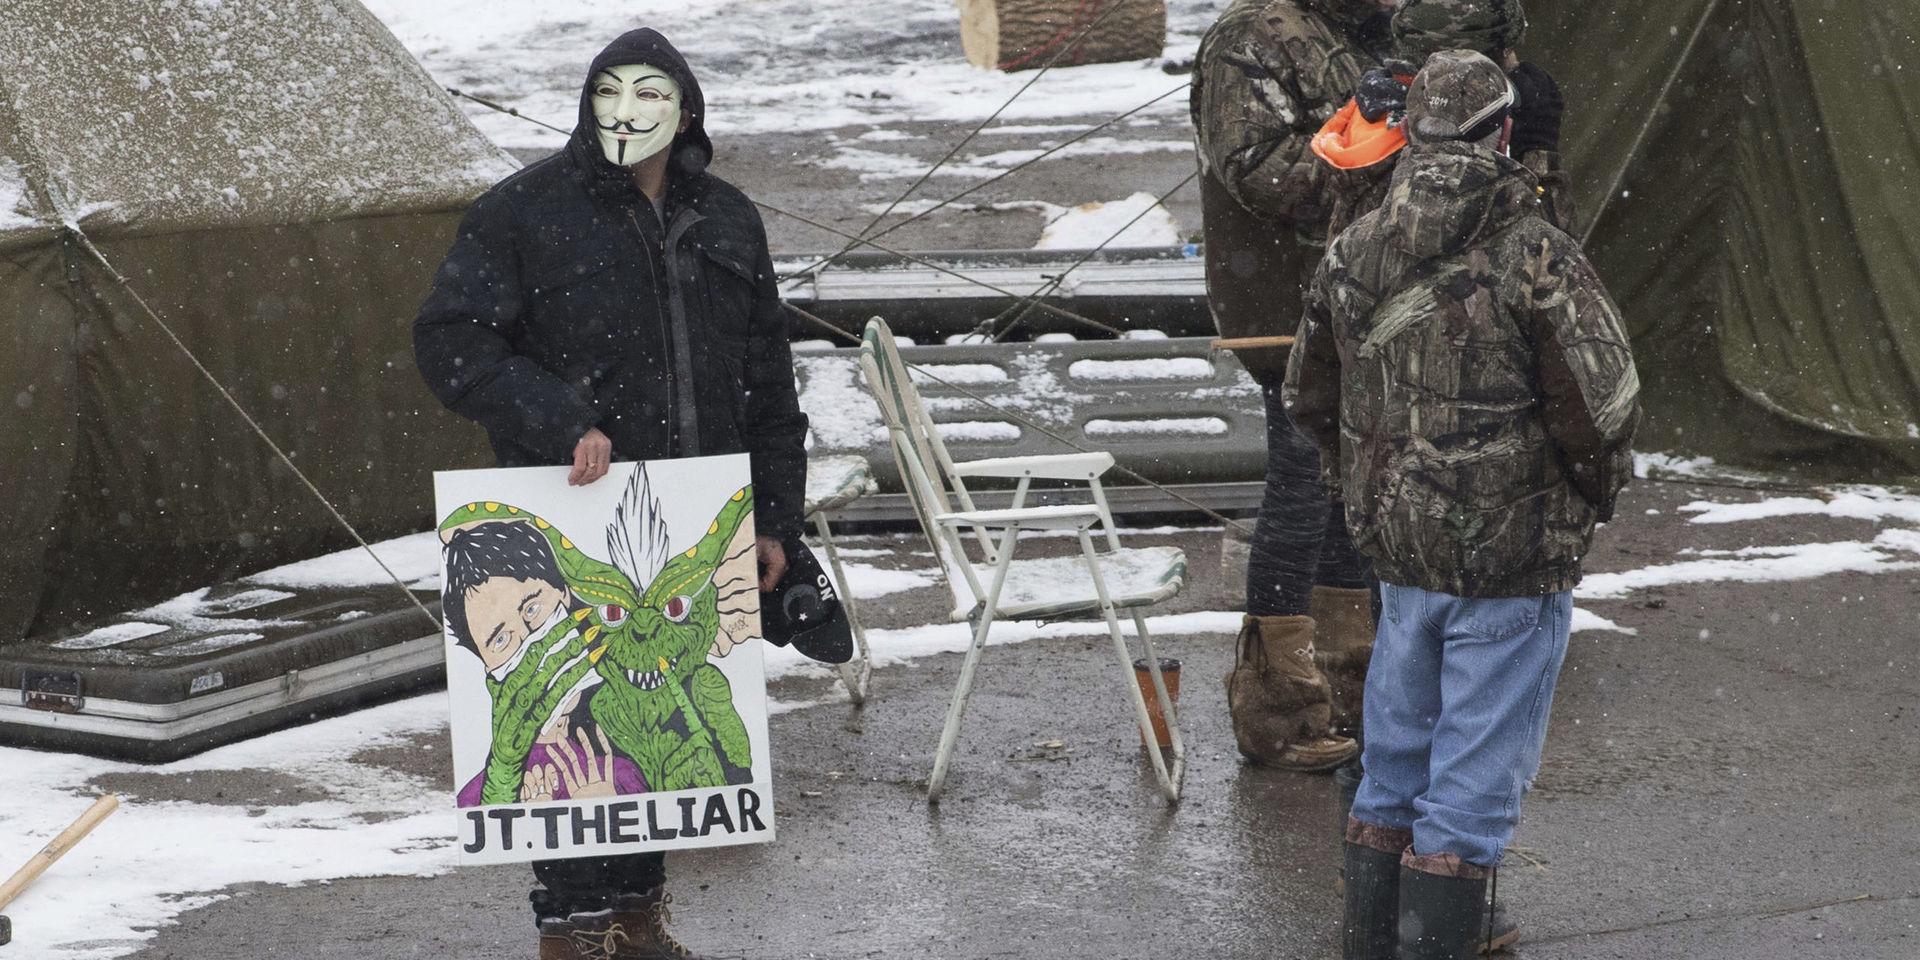 Demonstranter vid ett protestläger i närheten av Belleville i Ontario.